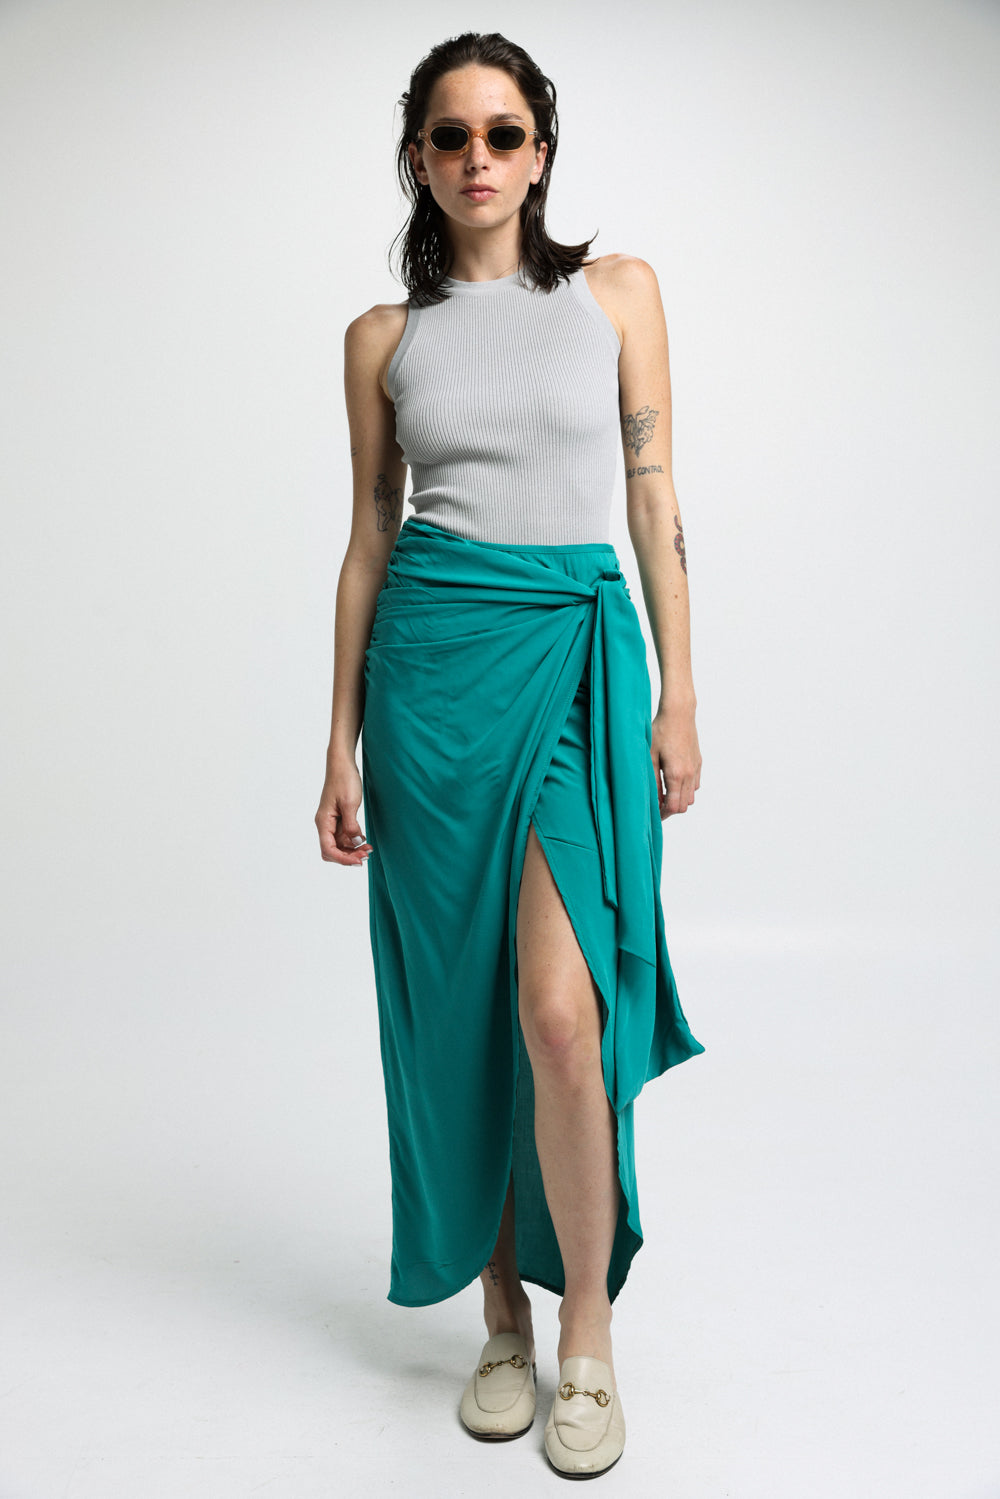 חצאית ירוקה ארוכה לנשים דגם EE Green Skirt 